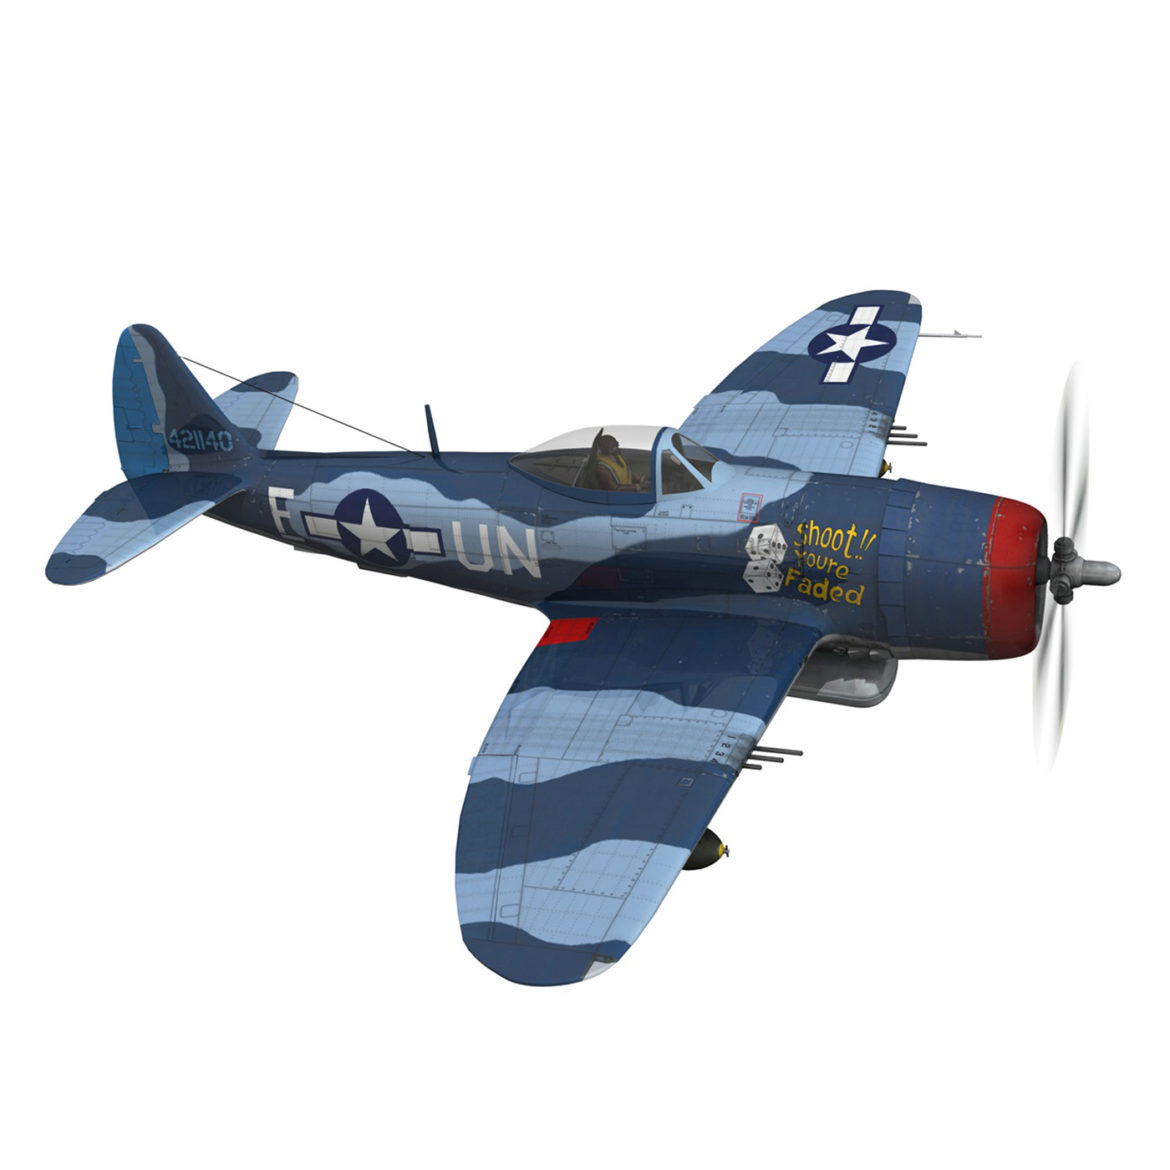 republic p-47m thunderbolt – darling dottie 3d model 3ds c4d lwo lw lws obj fbx 303842